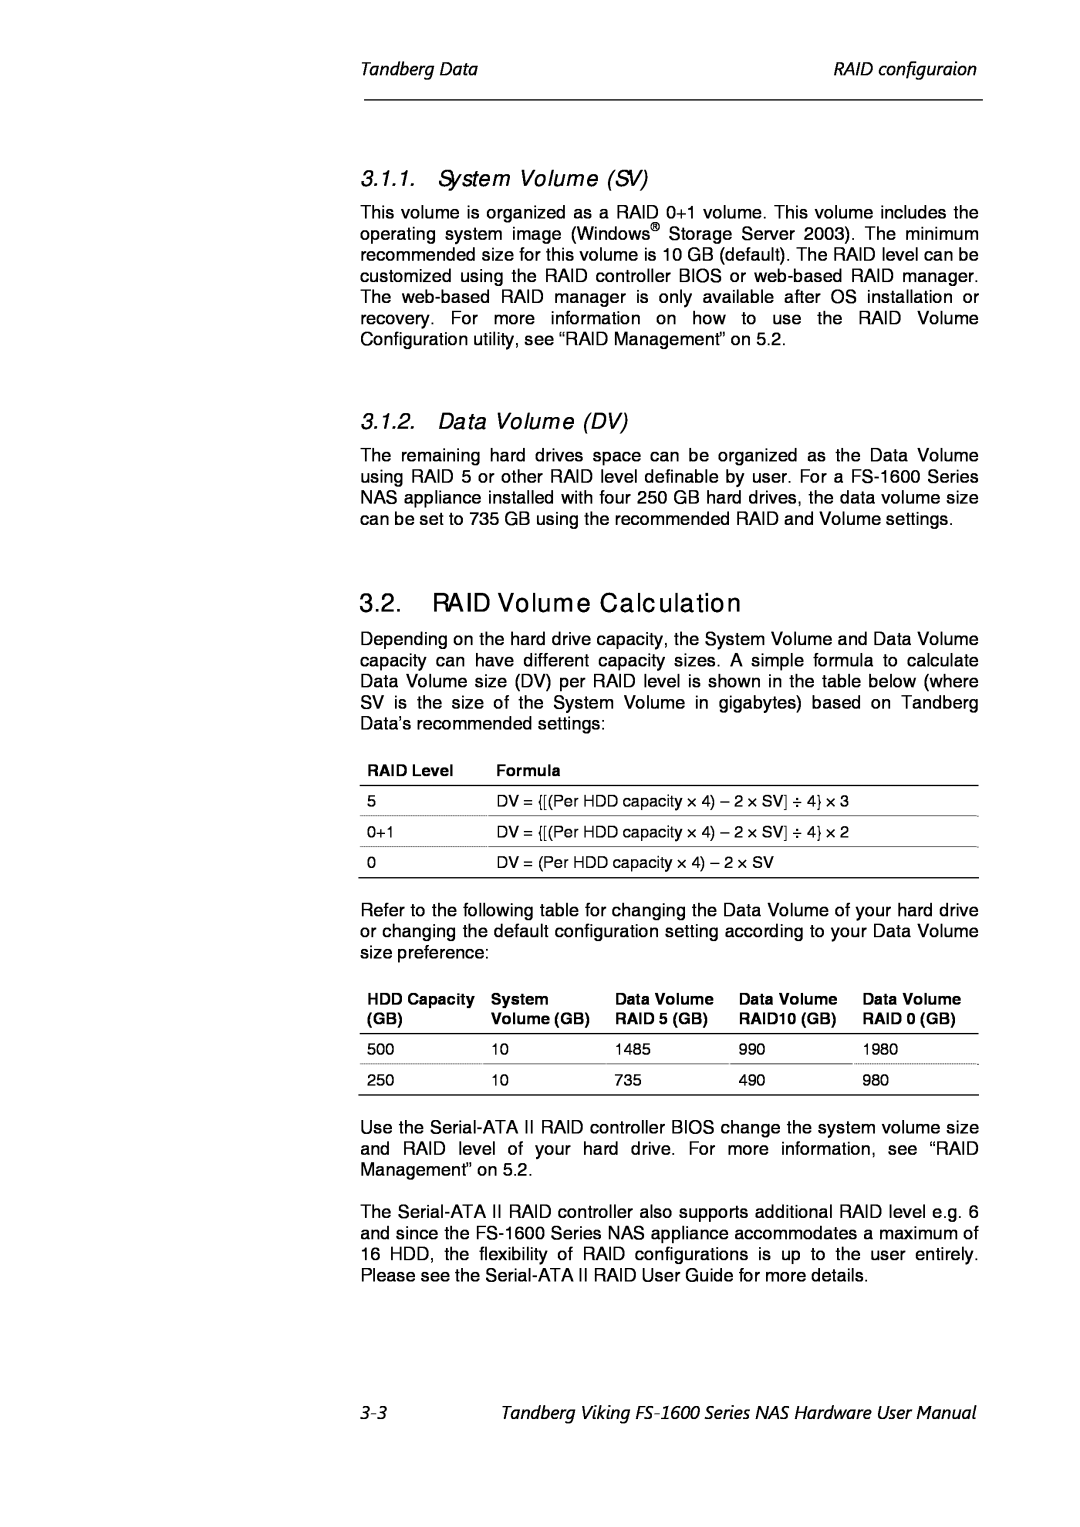 Tandberg Data FS-1600, FS-1610 RAID Volume Calculation, System Volume SV, Data Volume DV, Tandberg DataRAID configuraion 